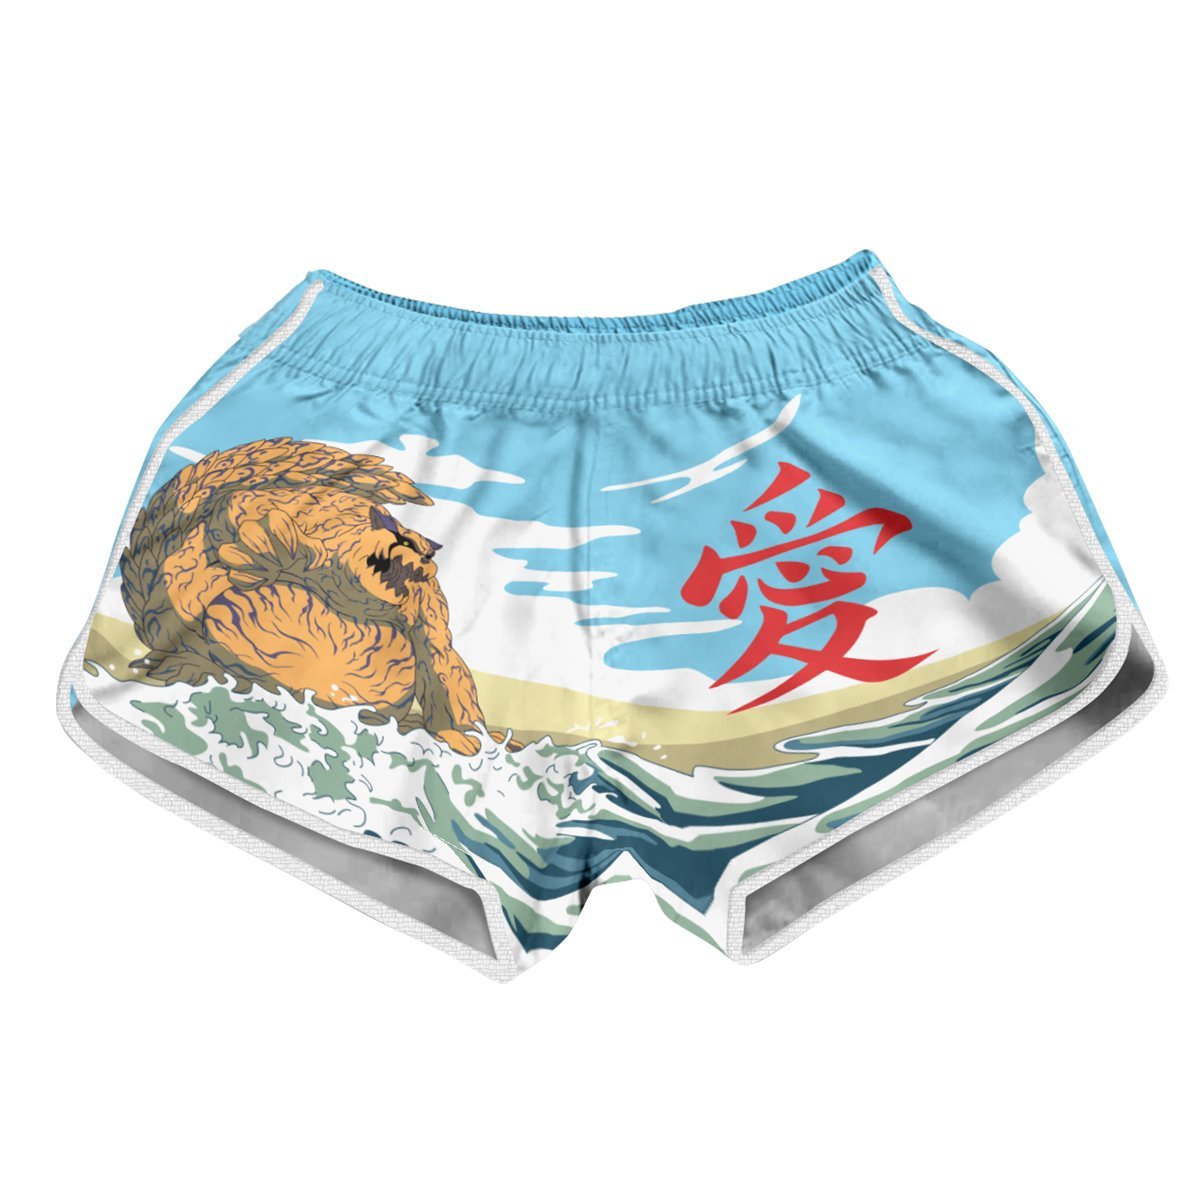 Gaara Summer Women Beach Shorts FDM3107 XS Official Anime Swimsuit Merch